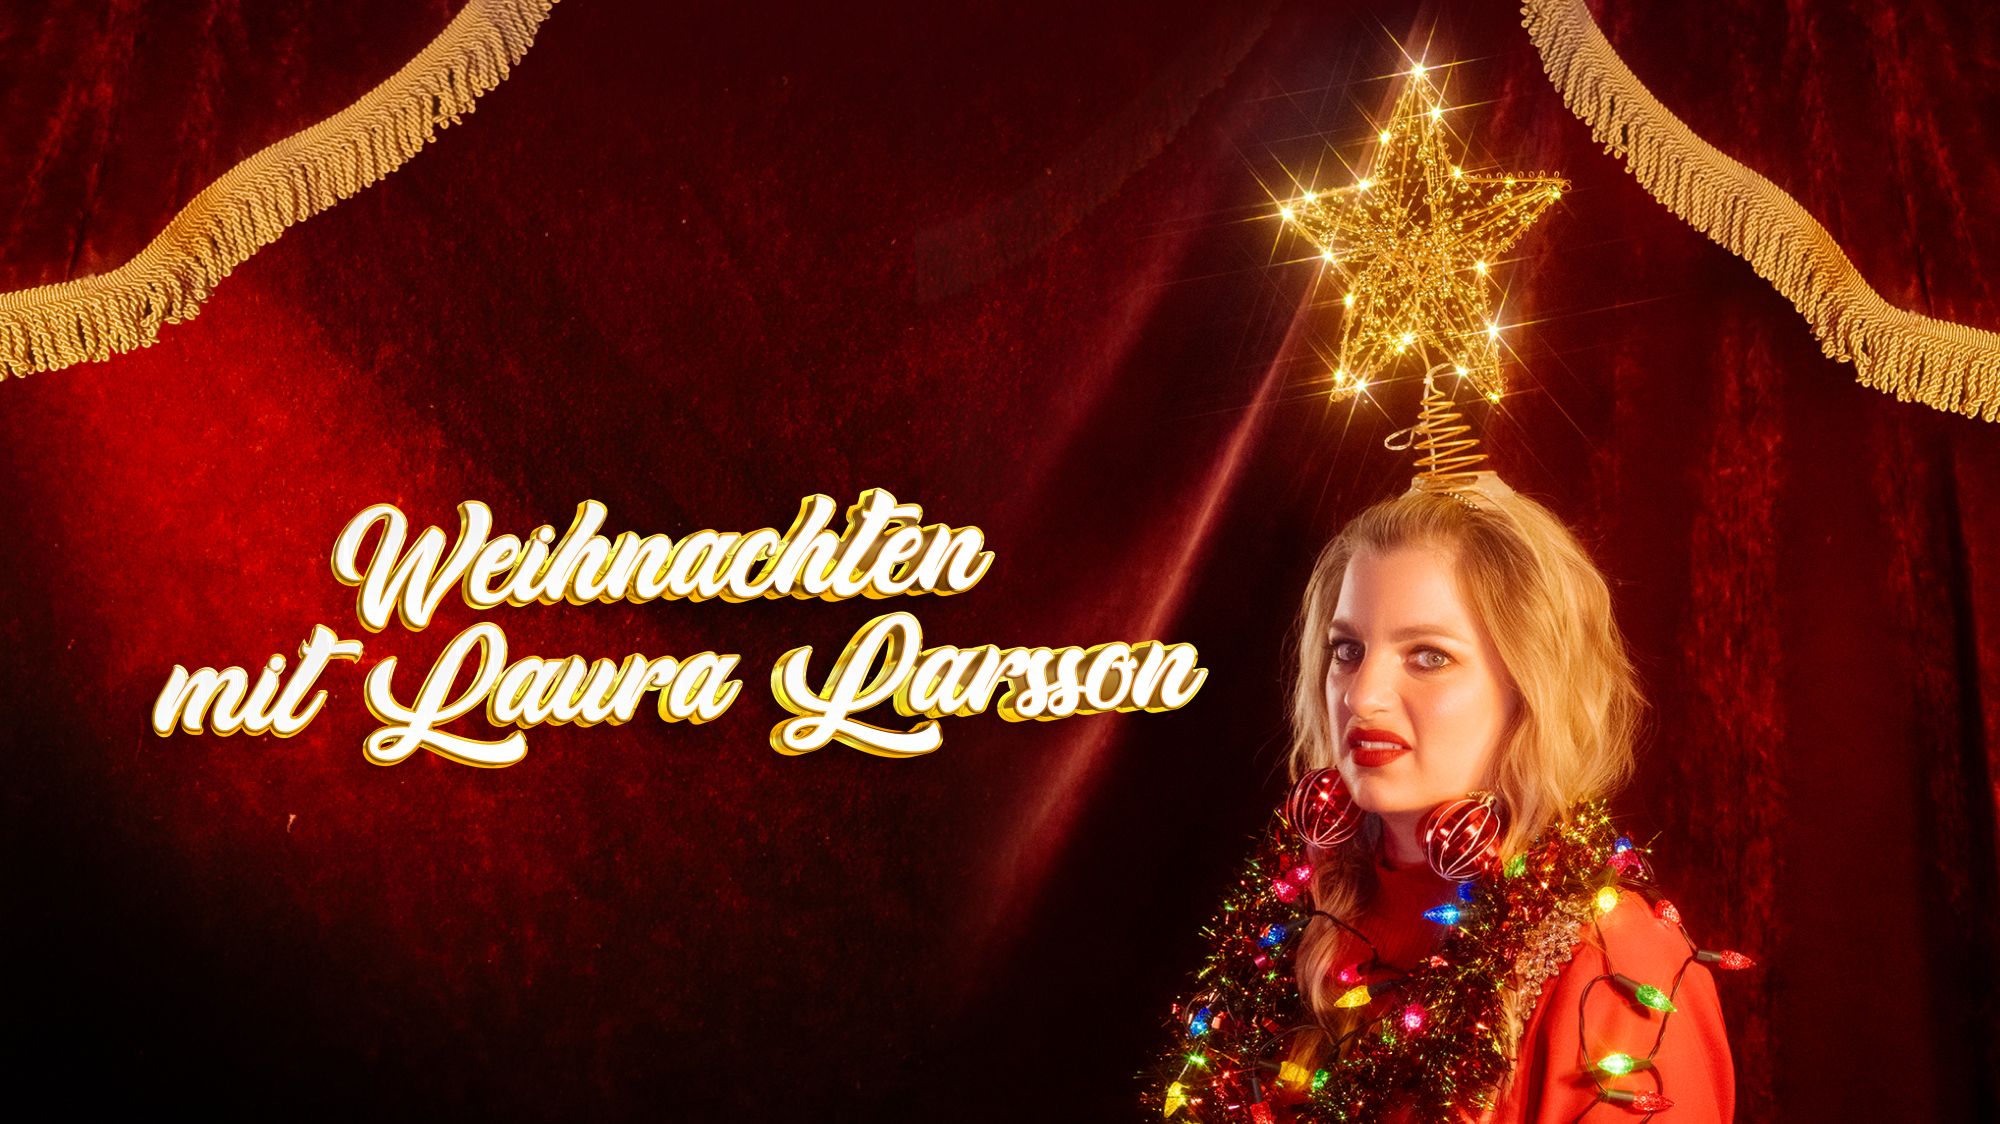 Weihnachten mit Laura Larsson - AUSVERKAUFT